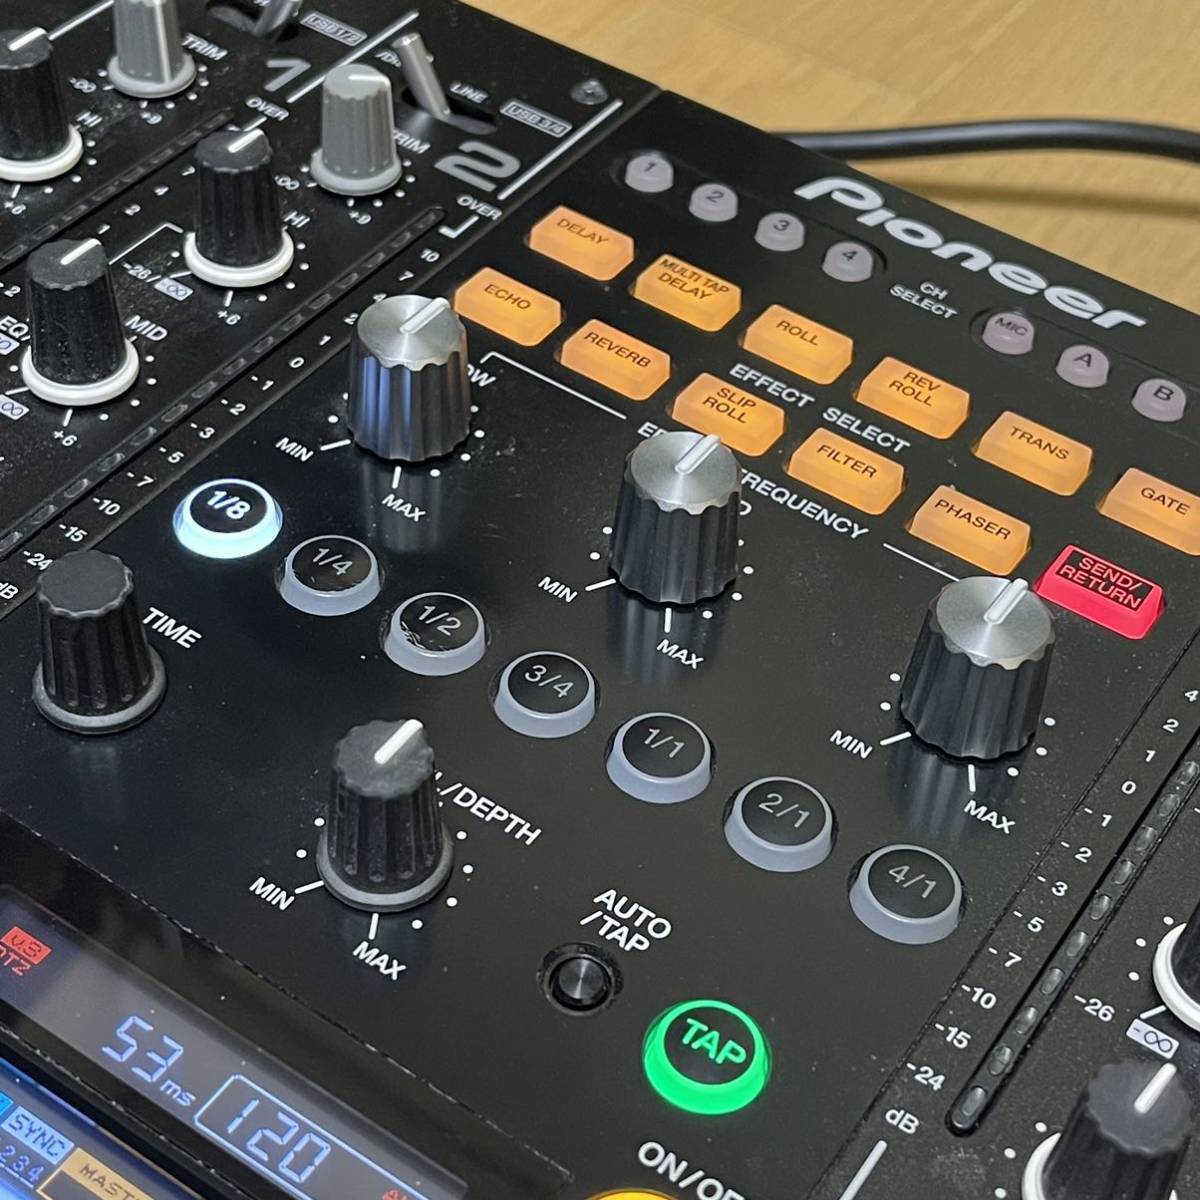 DJM2000nexus[Pioneer DJ]2015 год производства прекрасный товар 